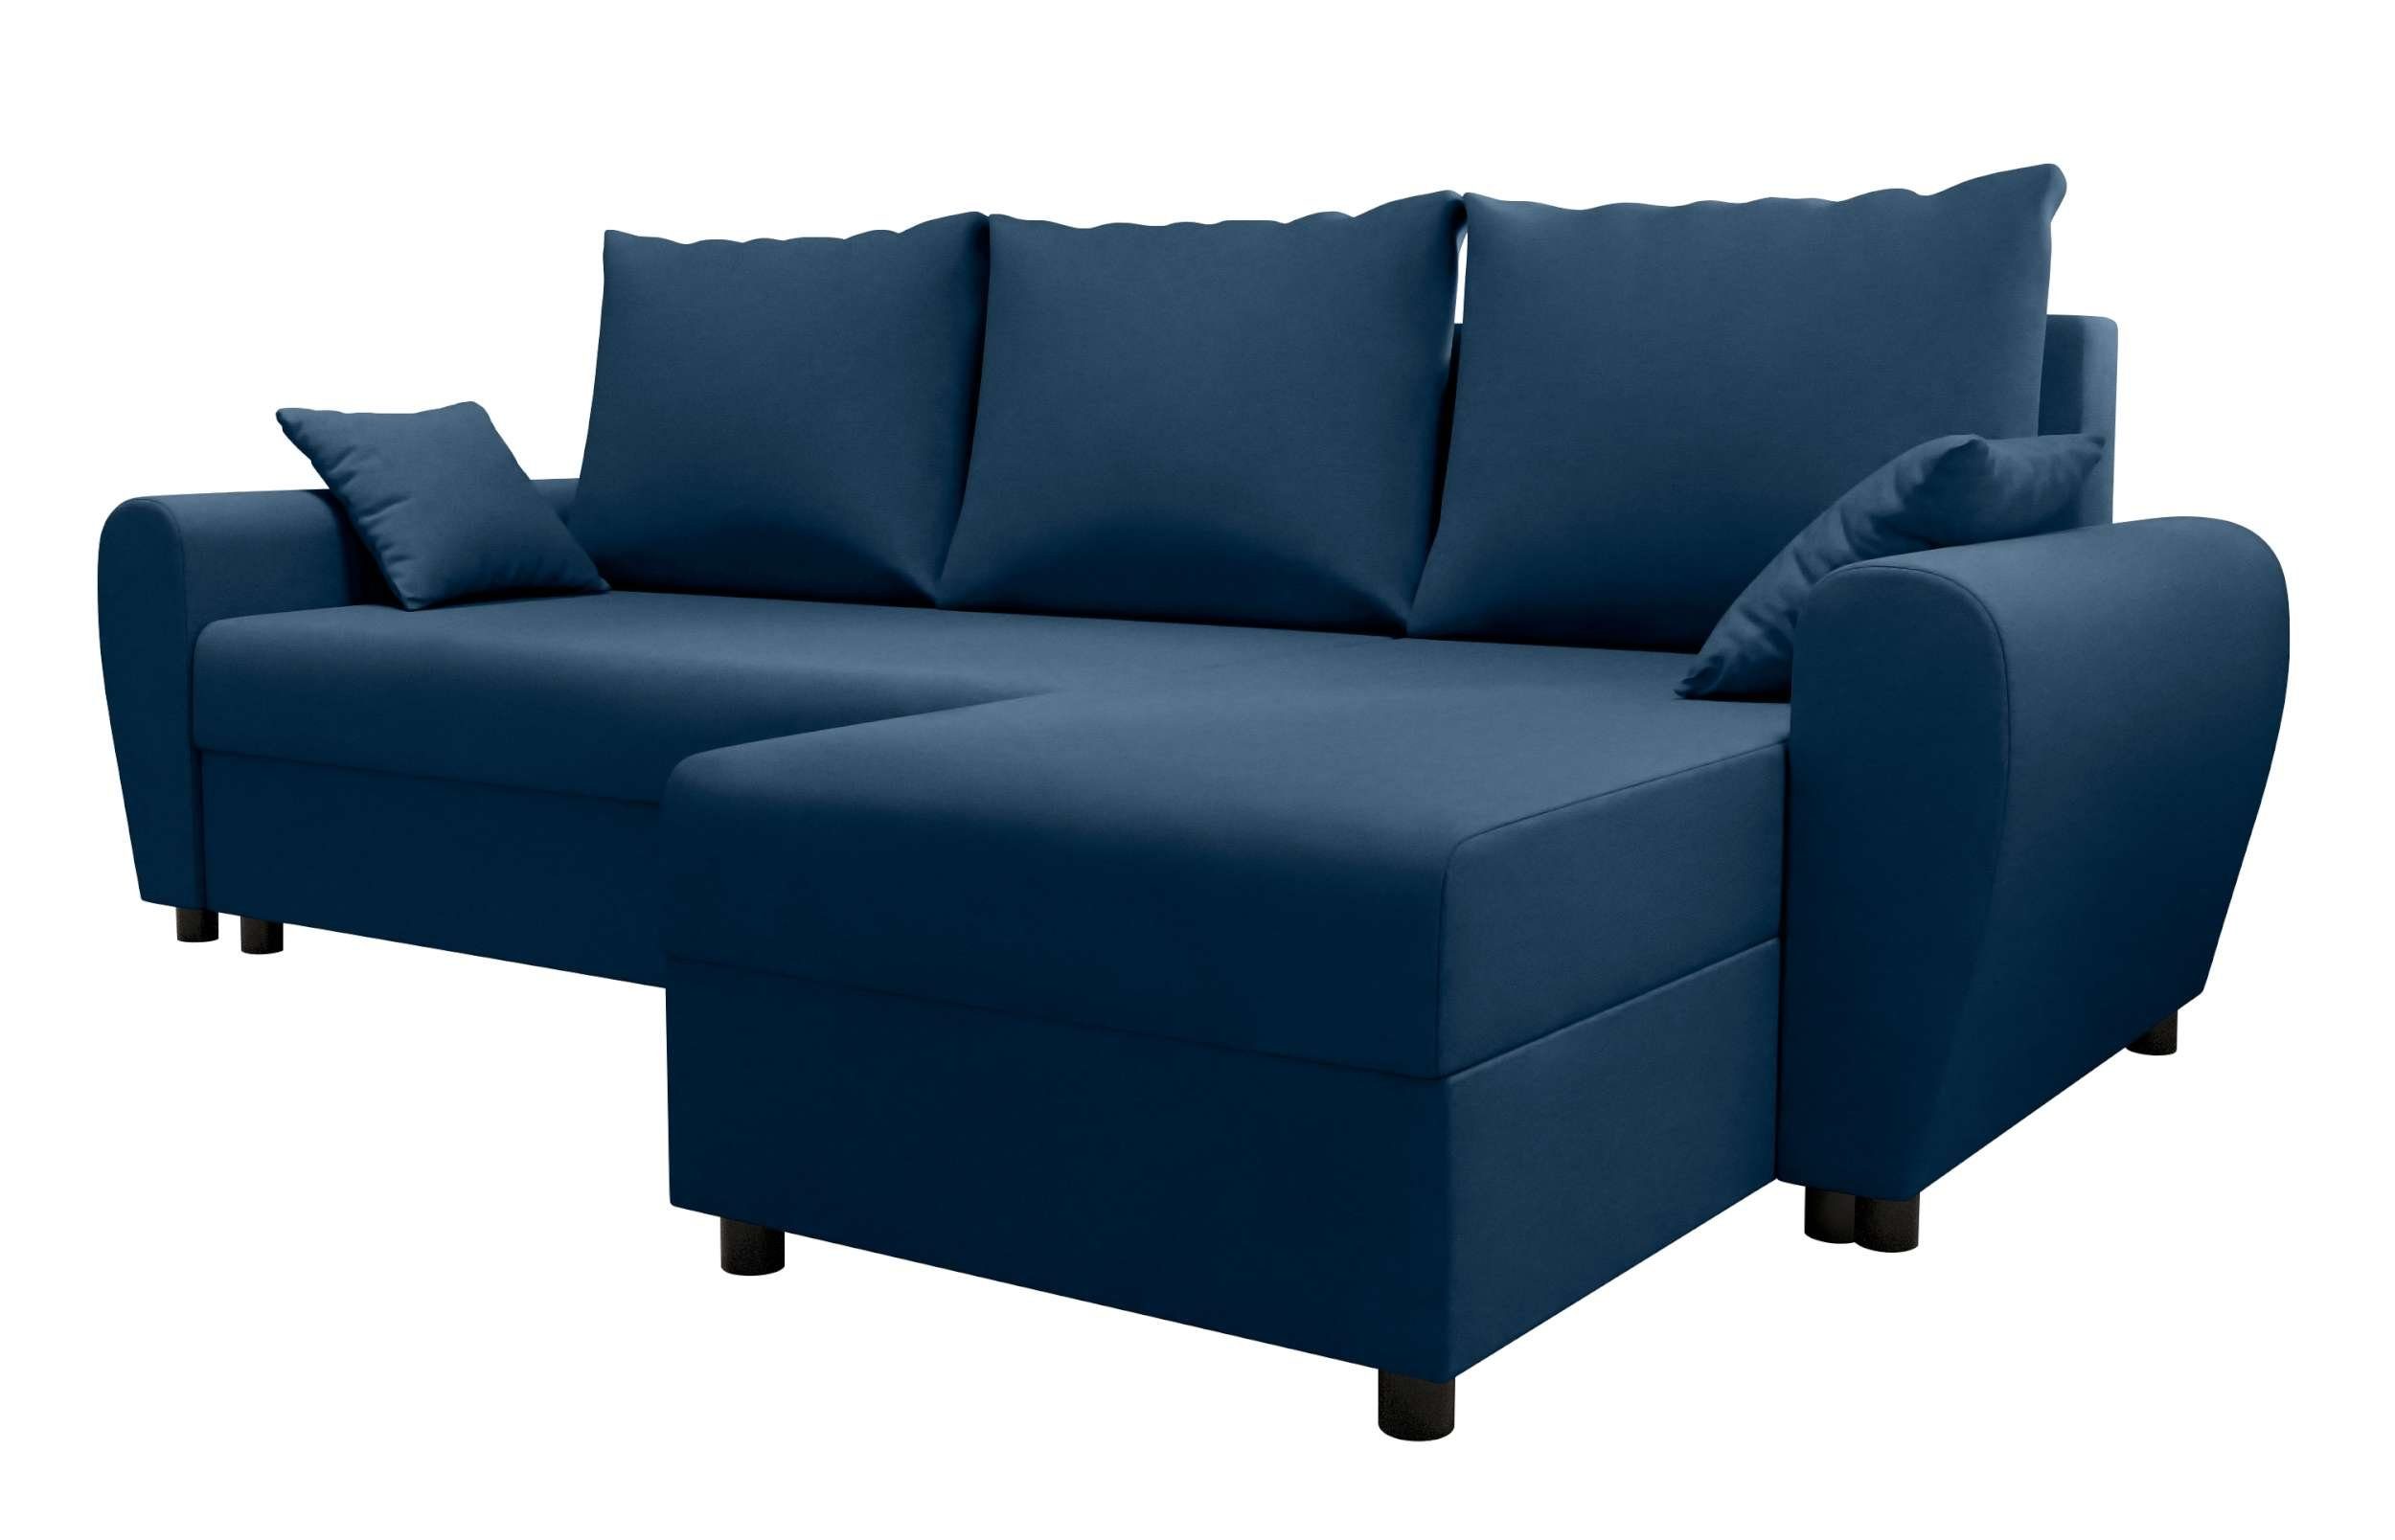 Stylefy Ecksofa Melina, L-Form, mit mit Modern Eckcouch, Sofa, Bettkasten, Bettfunktion, Sitzkomfort, Design